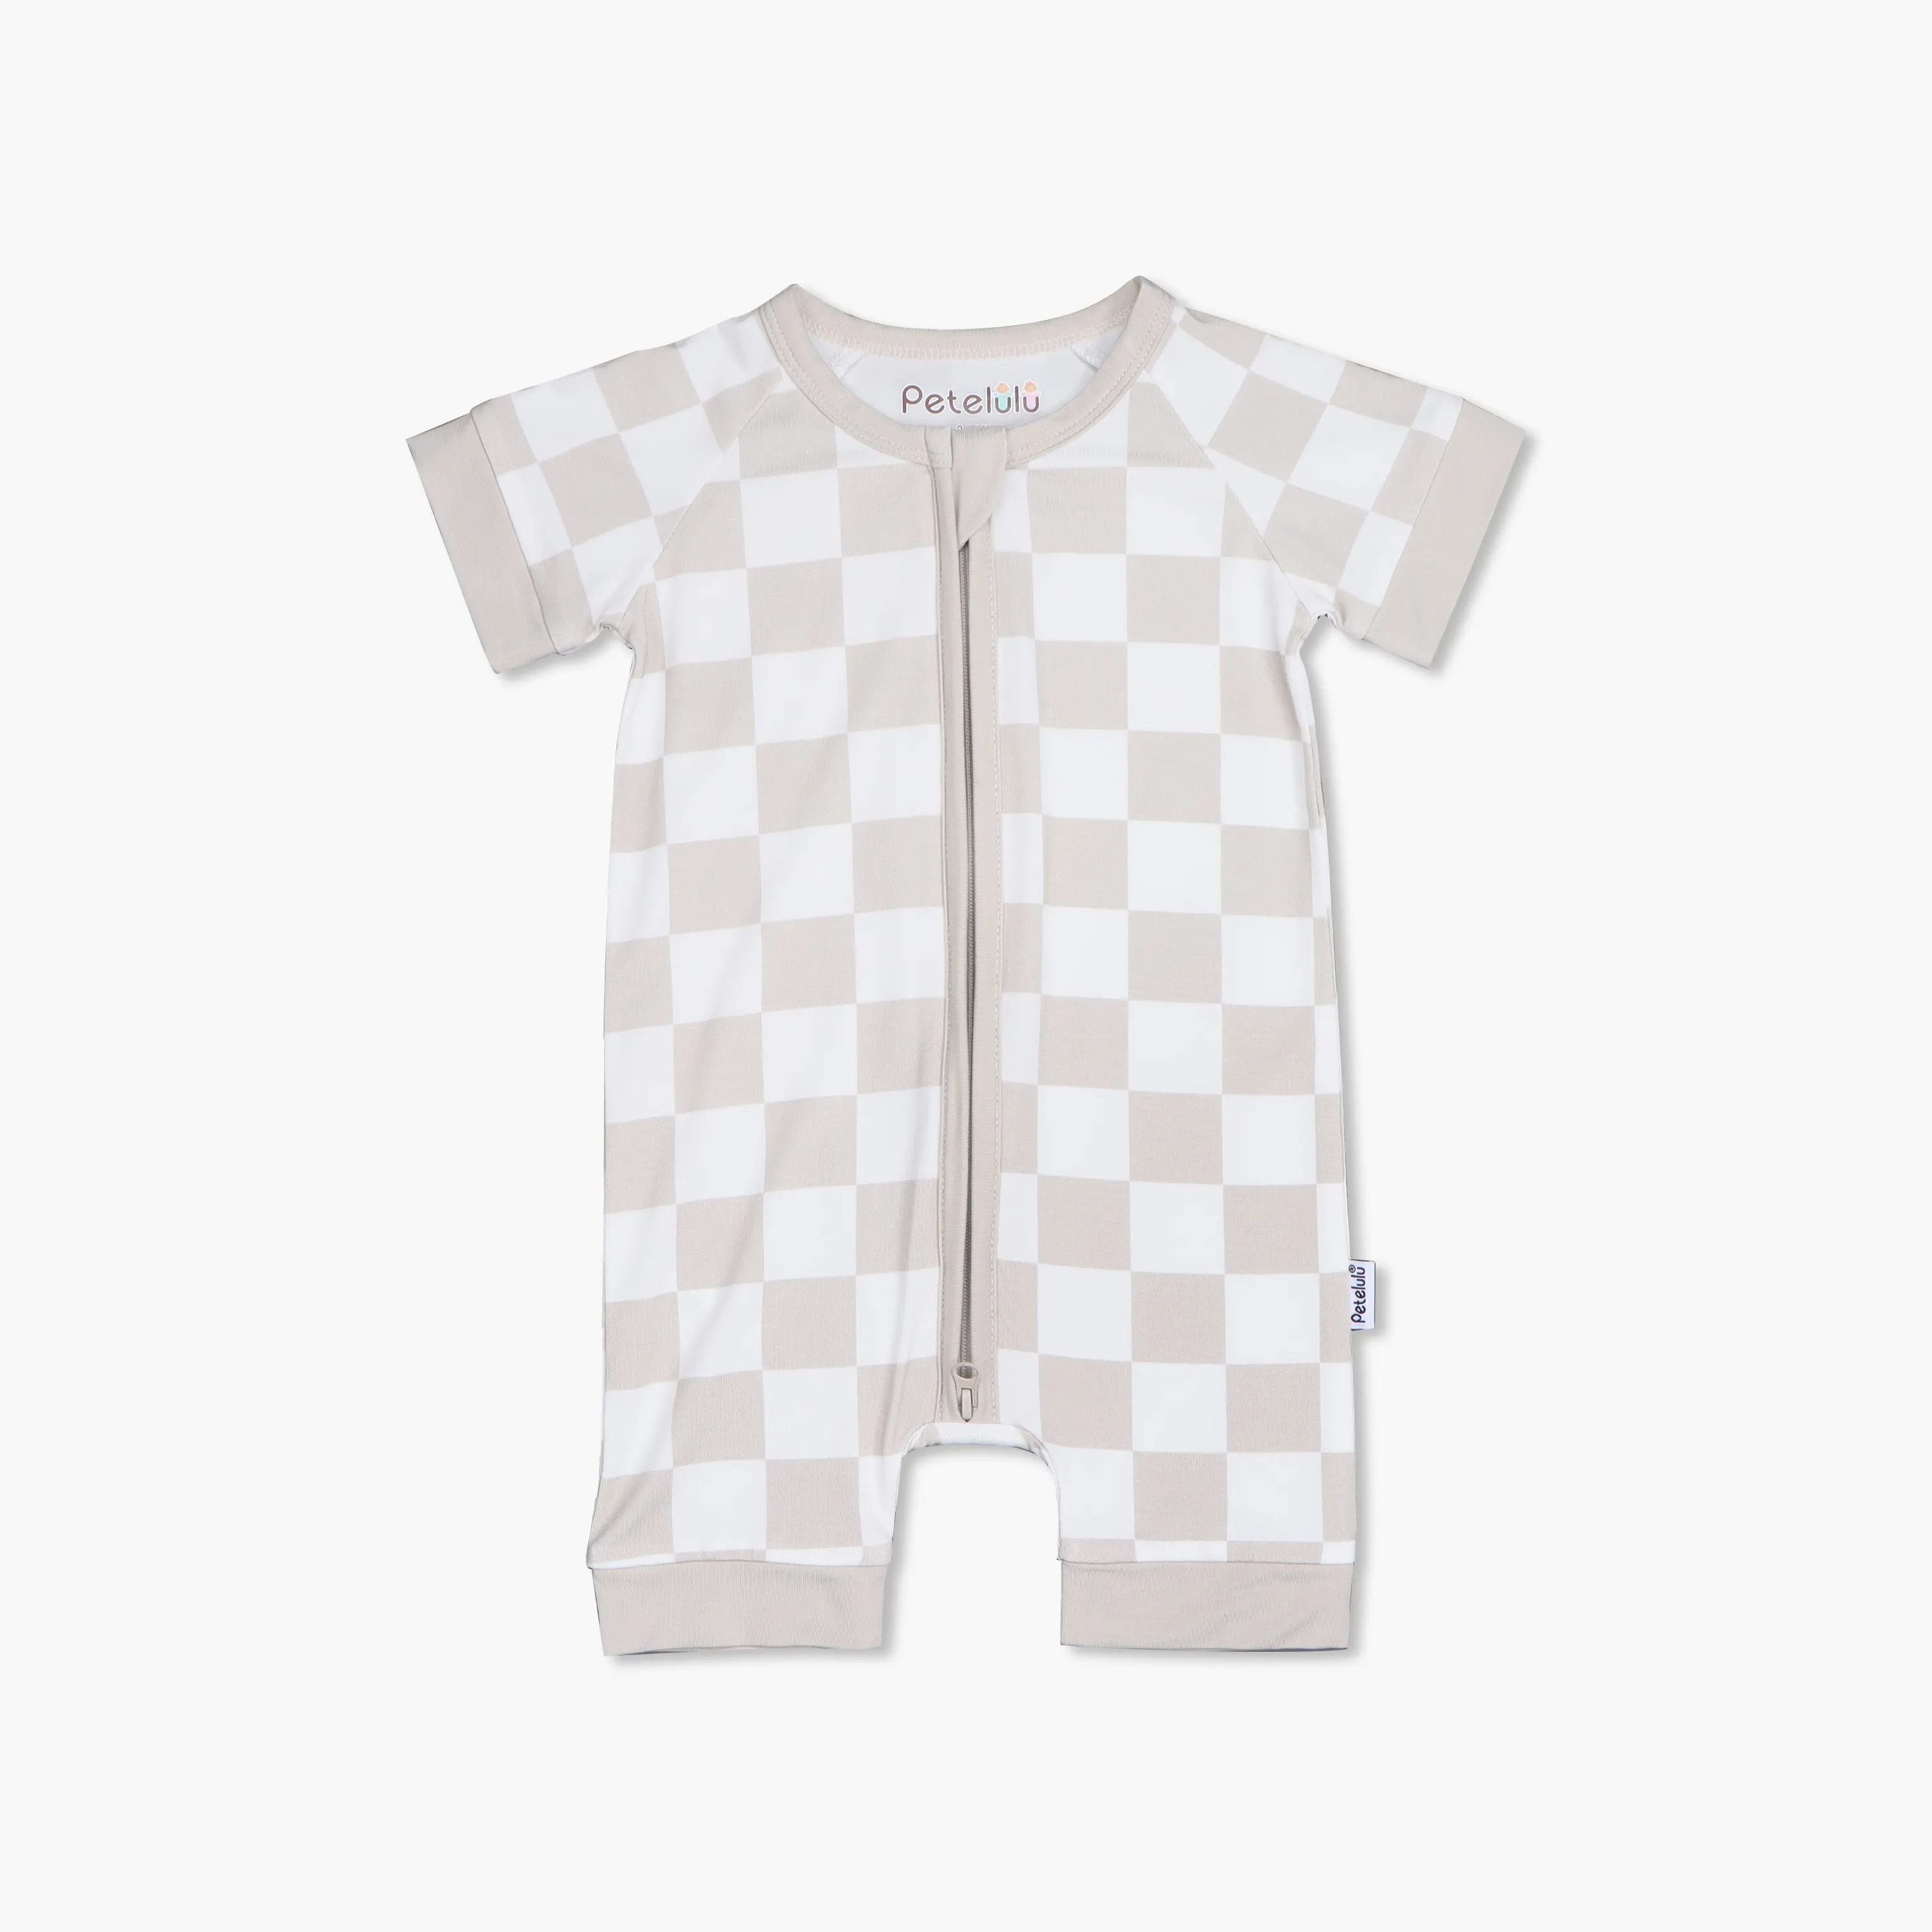 Bebê recém-nascido Romper Macio Macacão Pijama Feito de Fibra De Bambu Impermeável Unisex 2-Pcs Roupas Set xadrez bebê saco de dormir